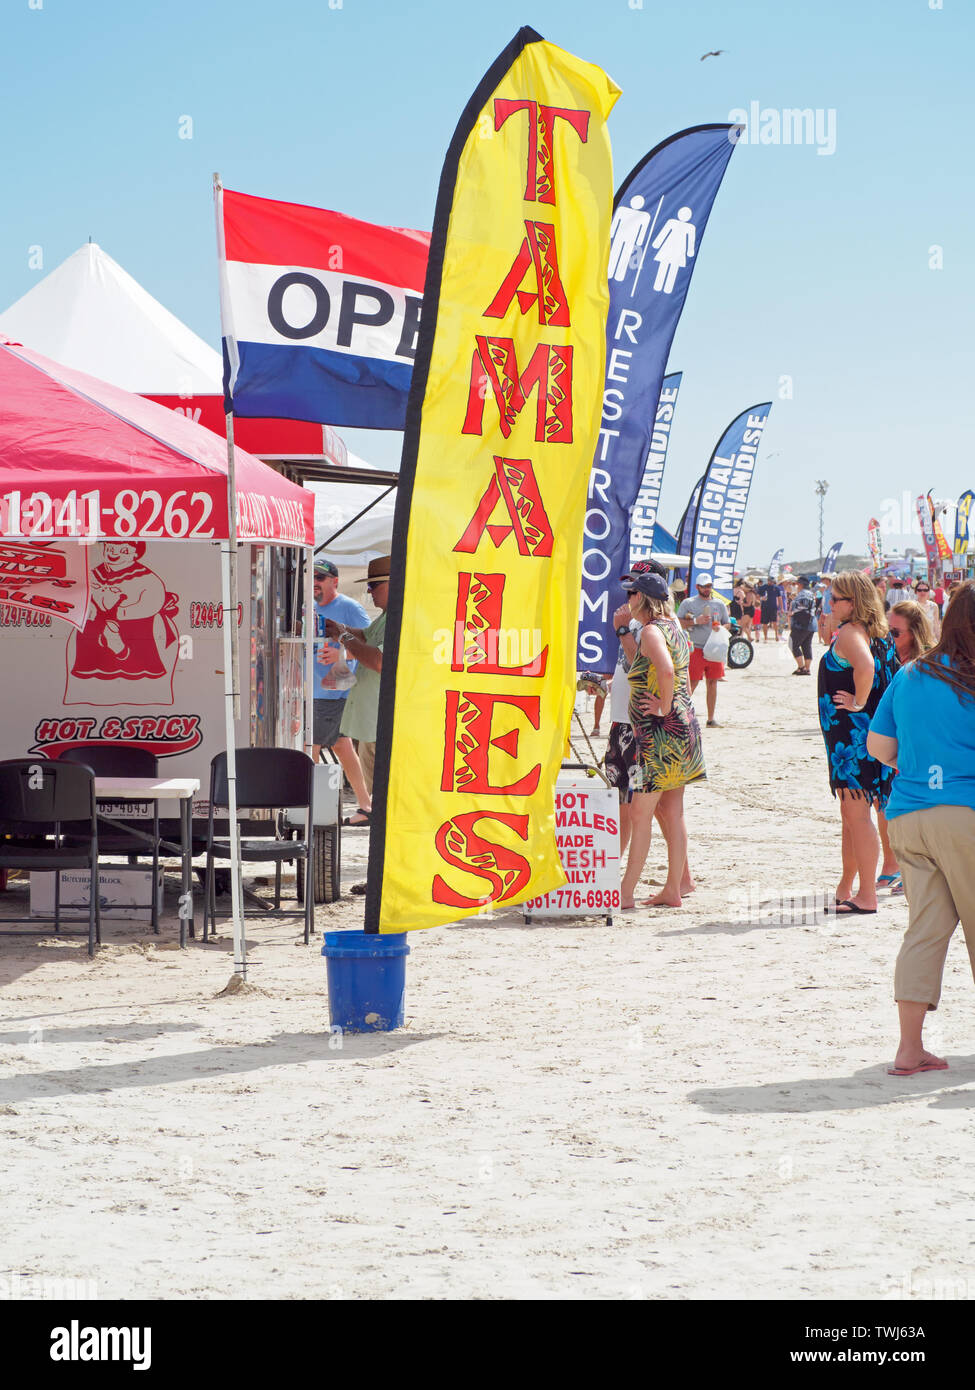 Les tamales en vente annoncé sur un pavillon rouge et jaune à la Texas 2019 Sandfest à Port Aransas, Texas USA. Orientation Portrait. Banque D'Images